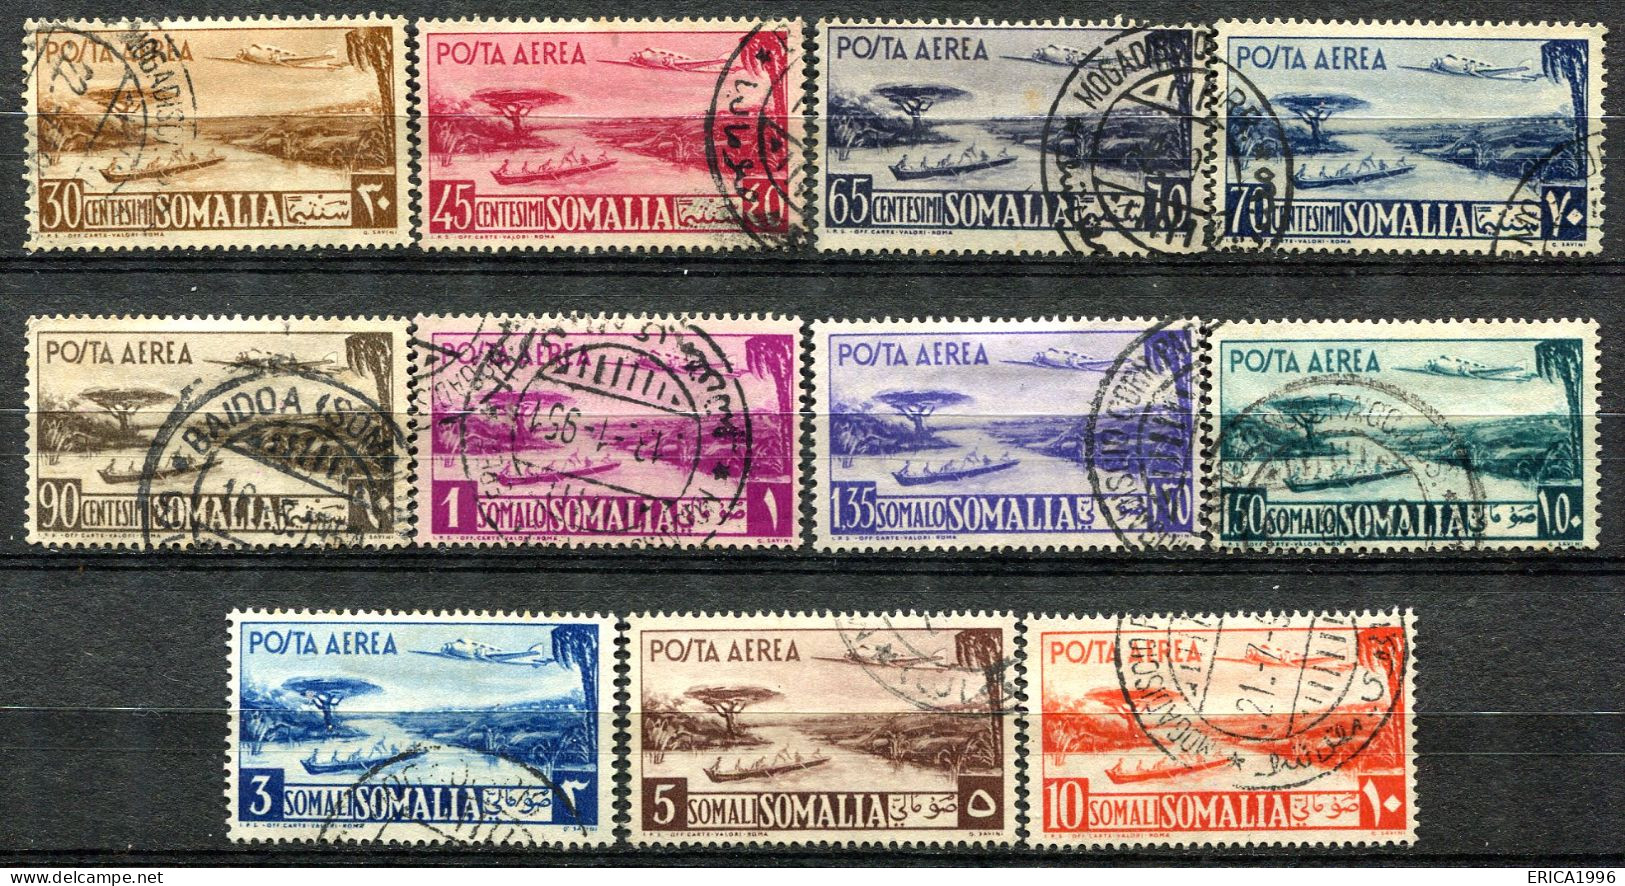 Z3688 SOMALIA AFIS 1950-51 Aereo E Veduta, Serie Completa Usata, Valore Catalogo Sassone € 400, Ottime Condizioni - Somalia (AFIS)